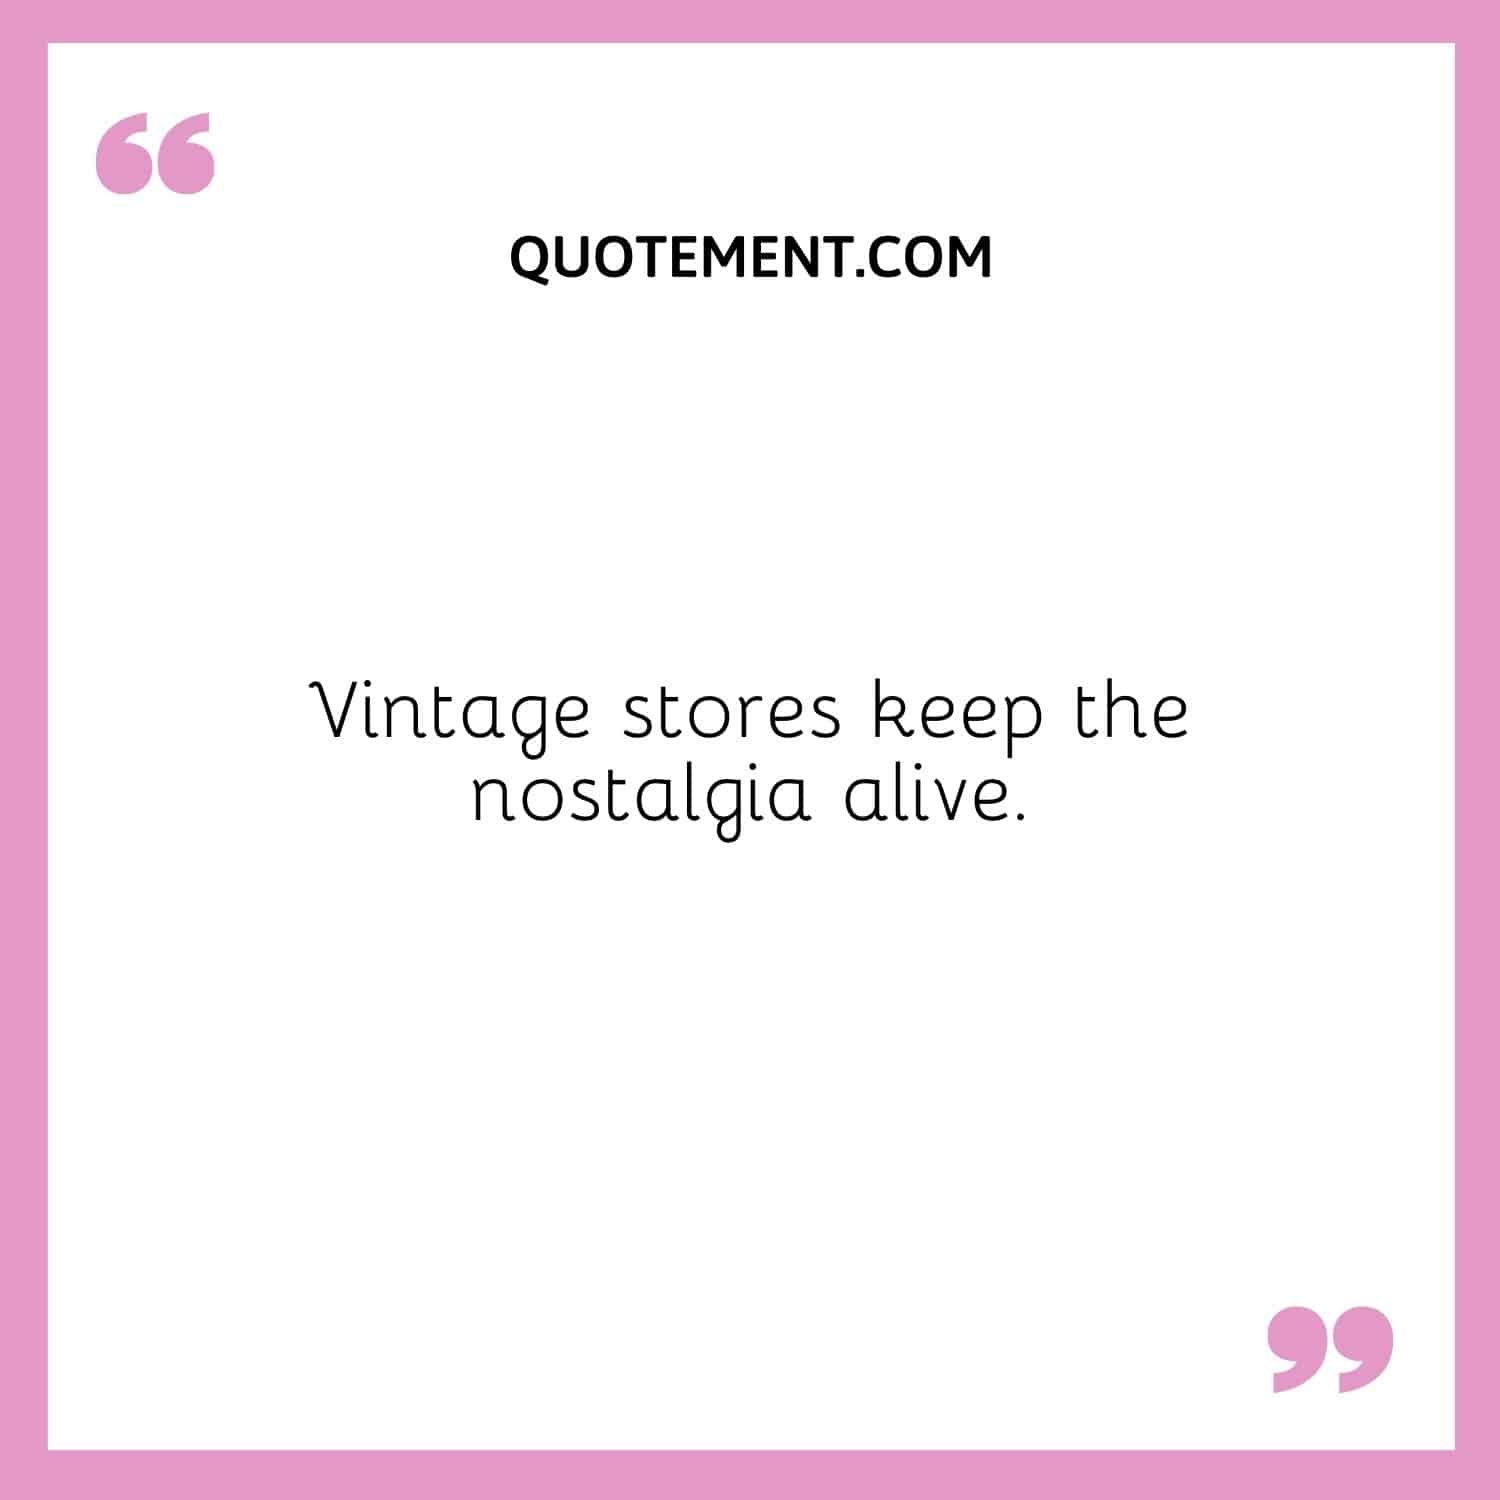 Vintage stores keep the nostalgia alive.